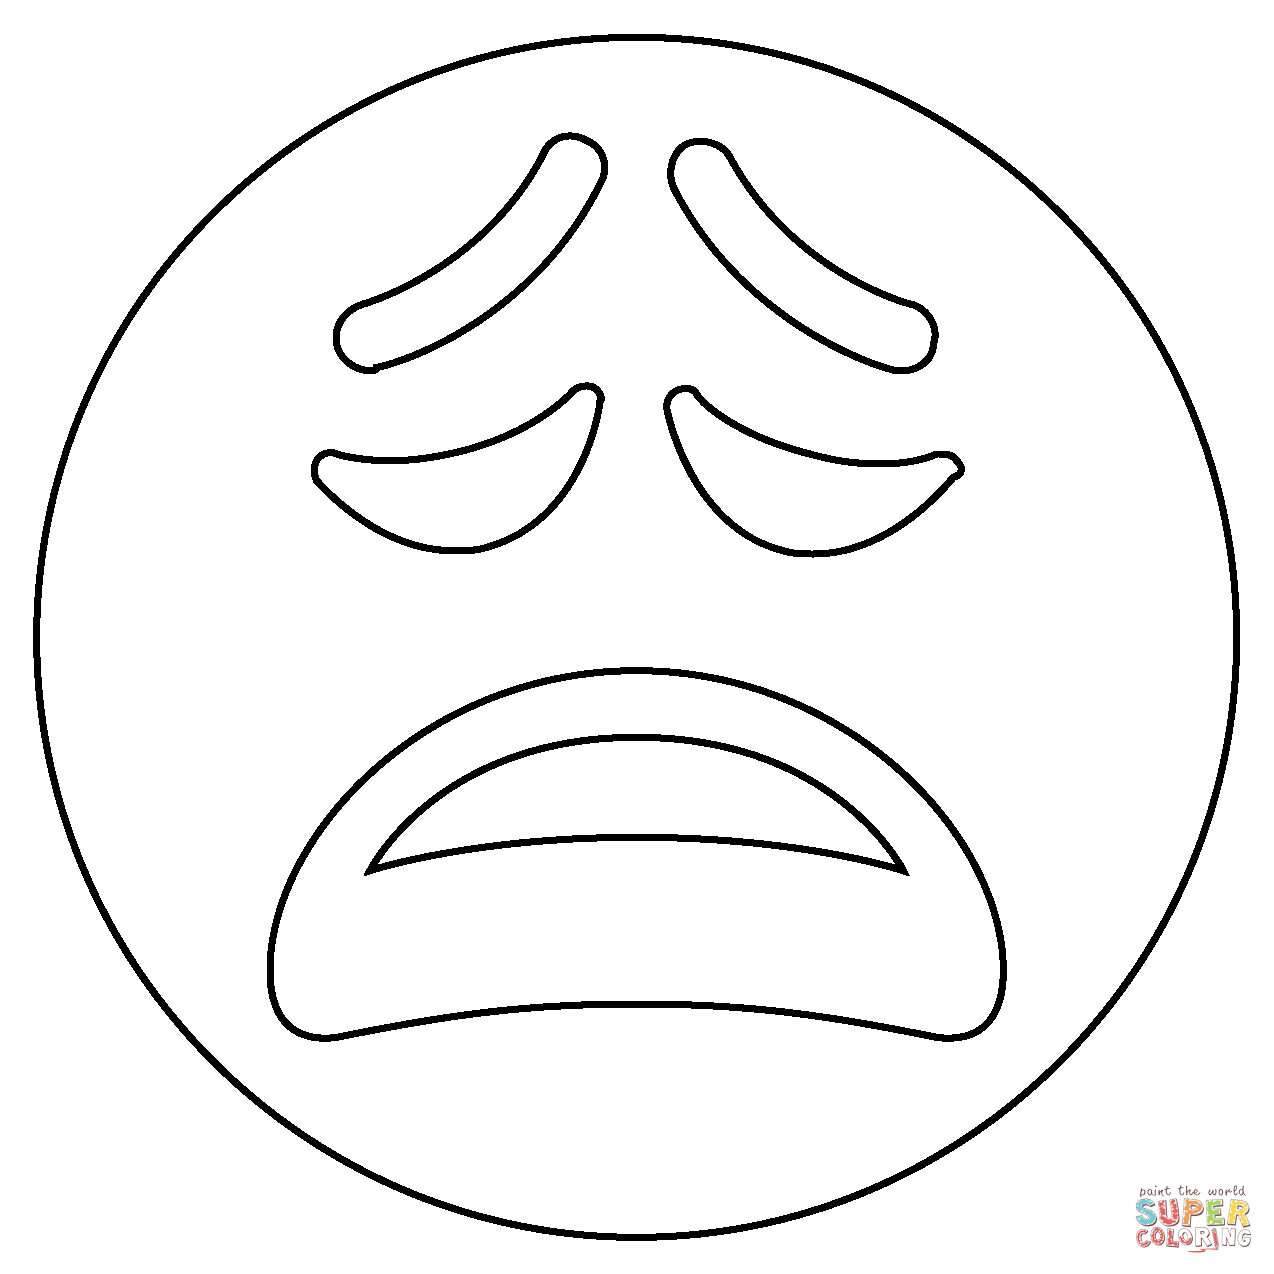 Dibujo de emoji de cara cansada para colorear dibujos para colorear imprimir gratis